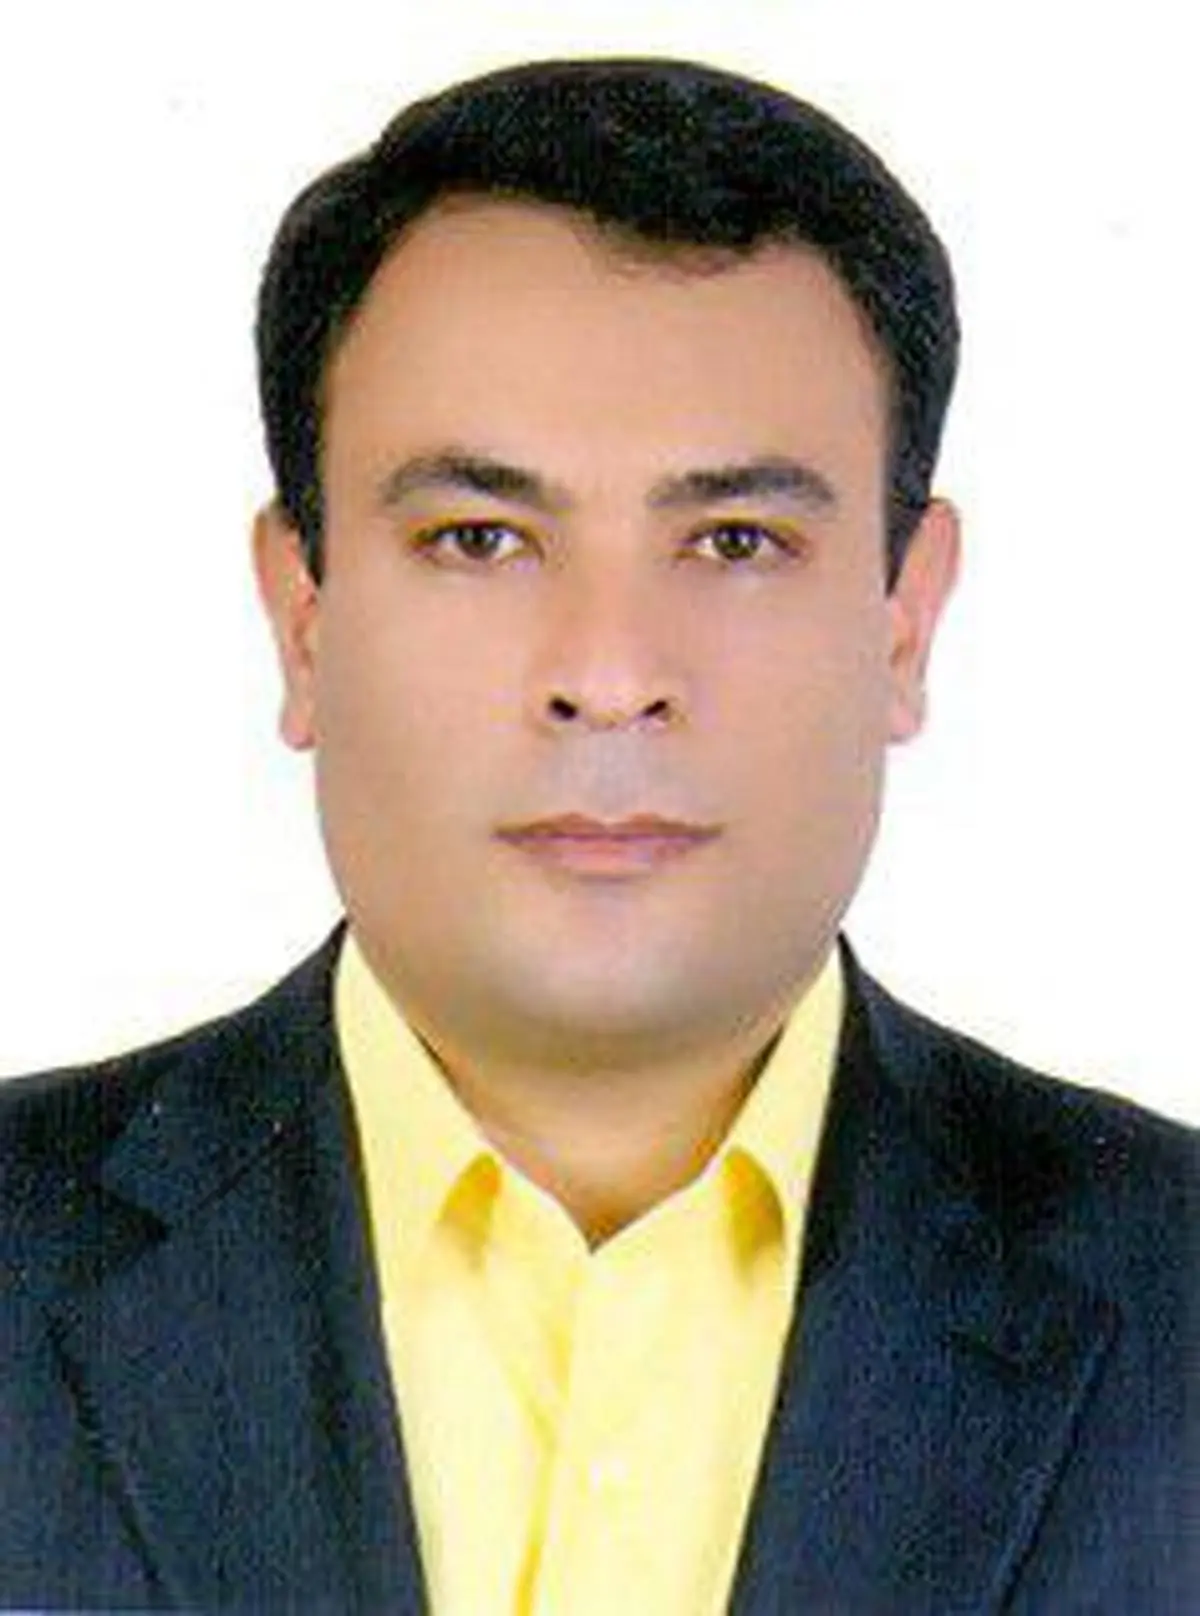 محسن نادری بعنوان معاونت مالی و اقتصادی شرکت منصوب شد
